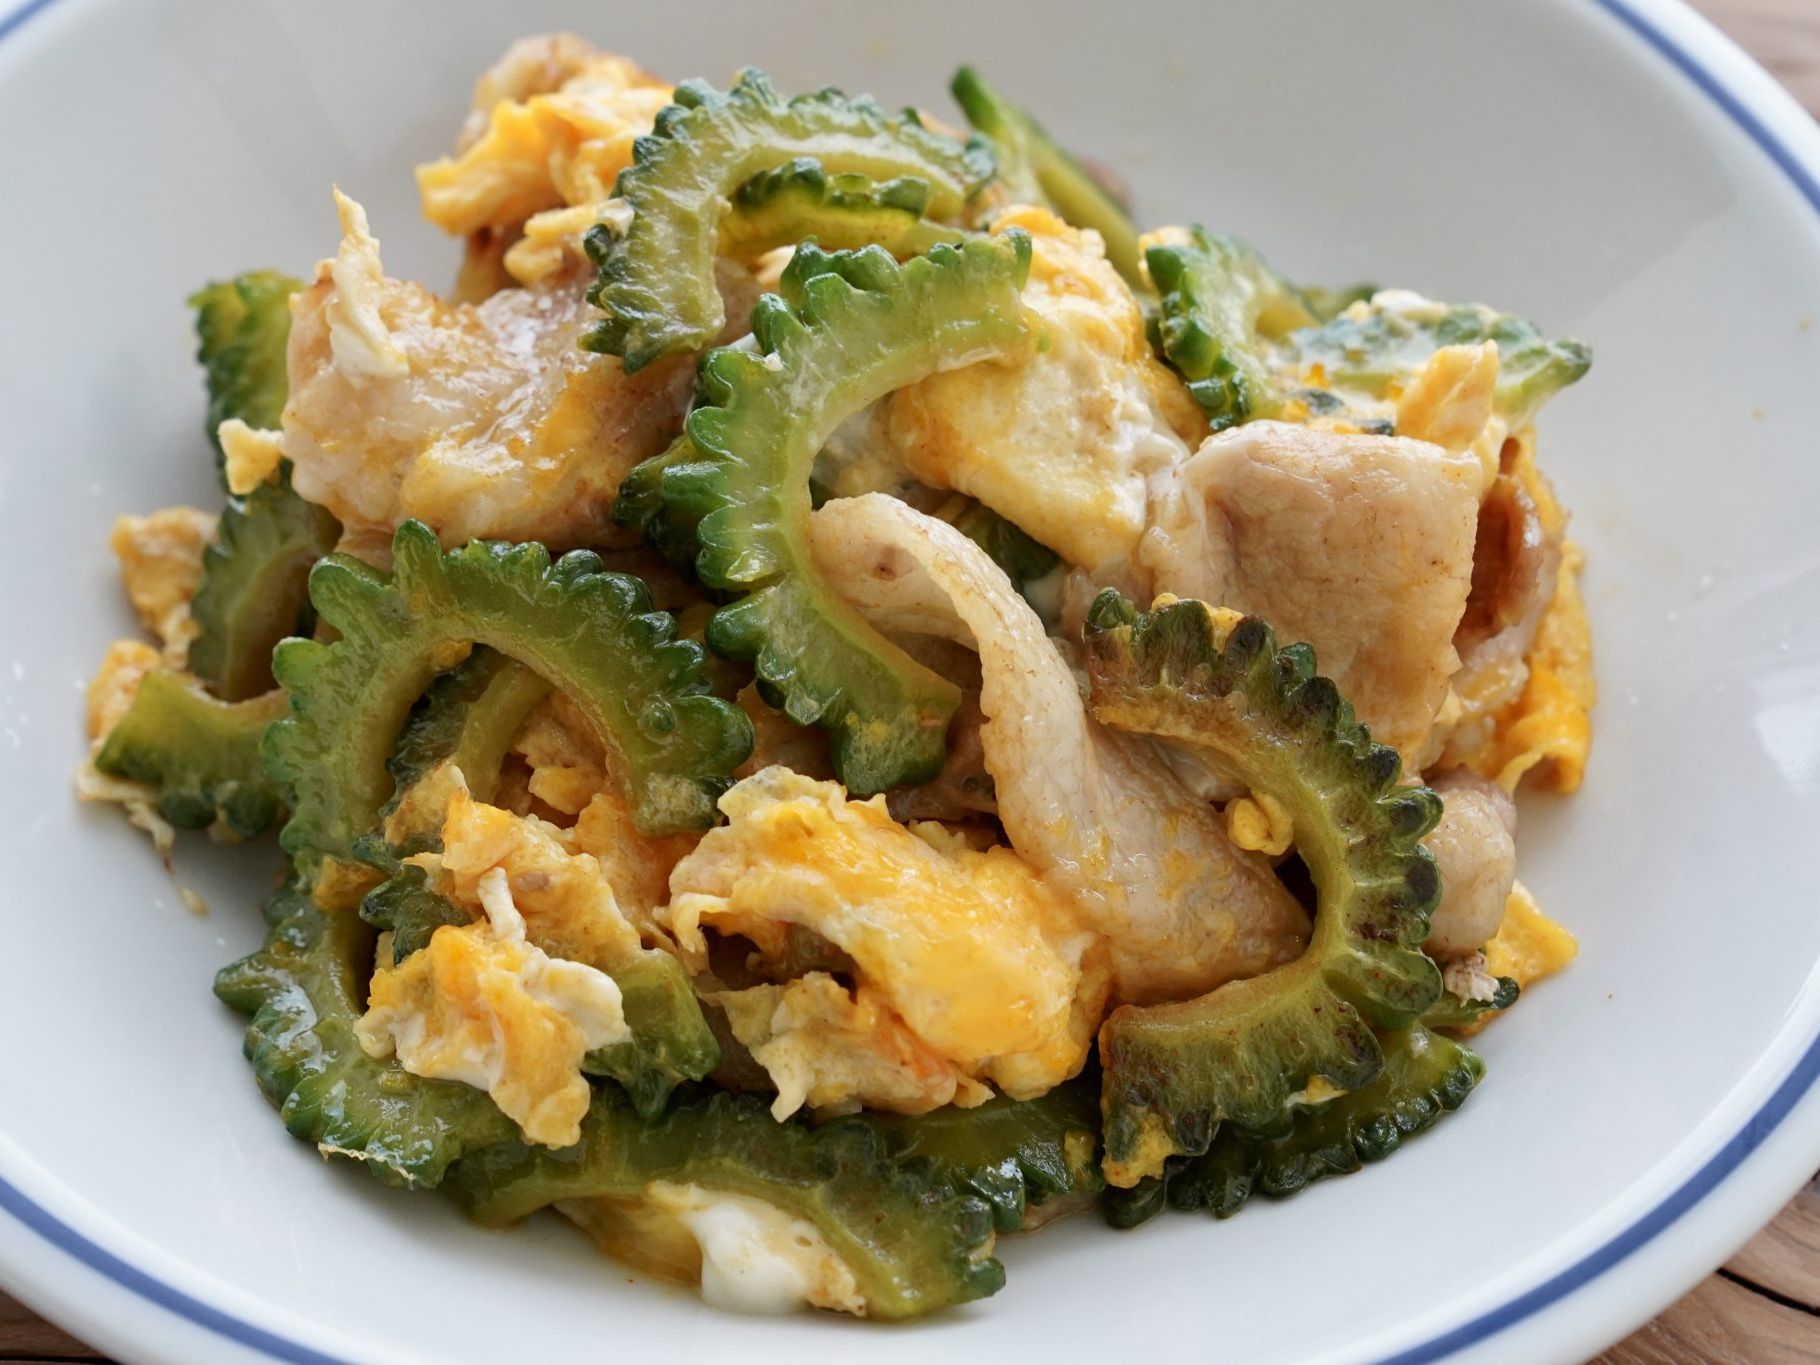 ゴーヤチャンプルのレシピ 味付けも調理も簡単 人気沖縄料理の作り方 やまでら くみこ のレシピ